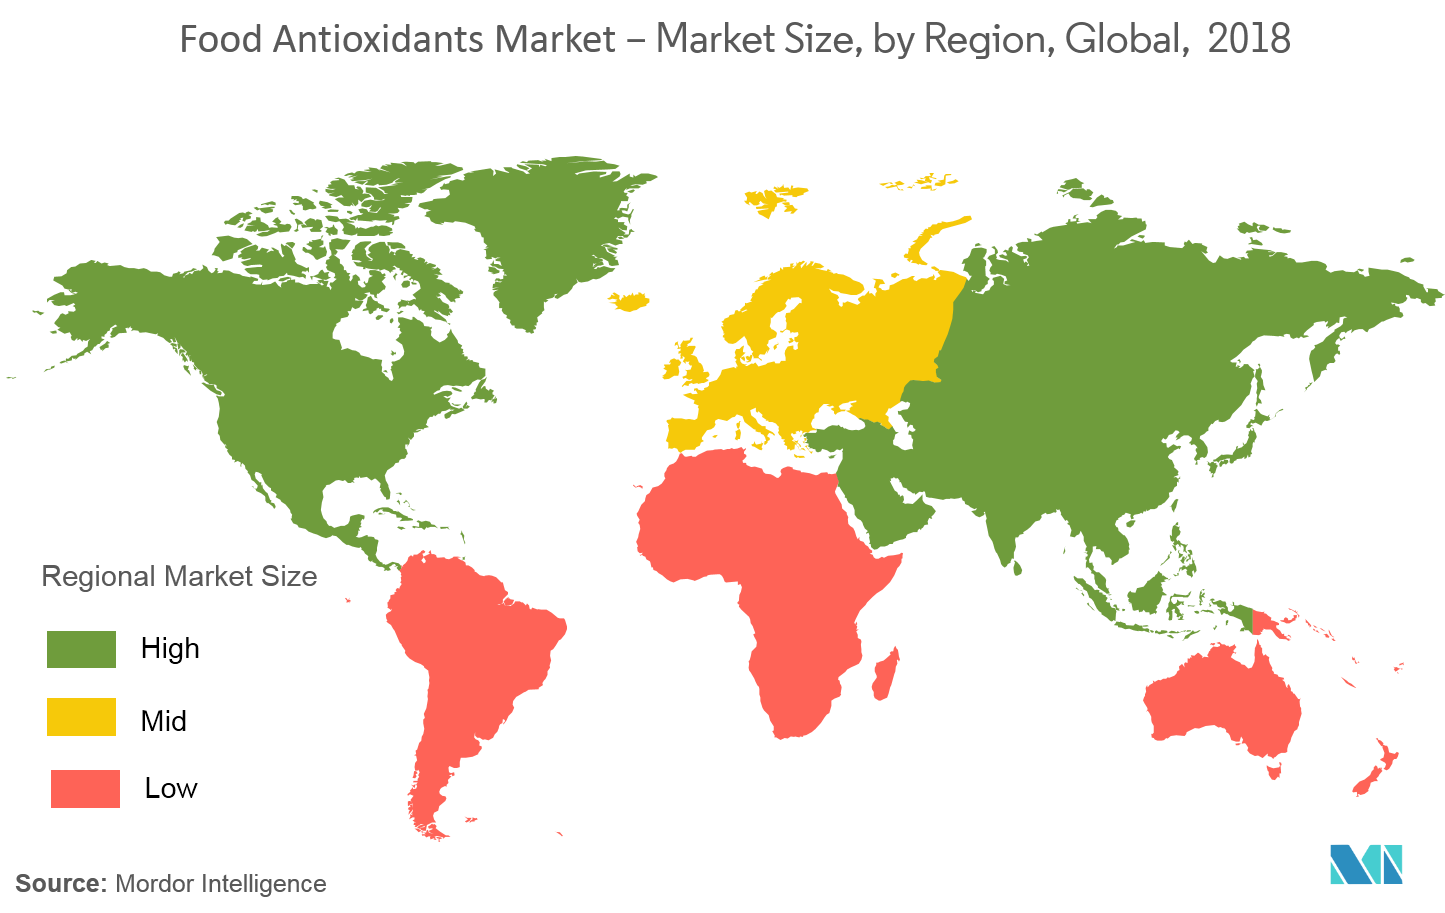 Food Antioxidants Market Growth